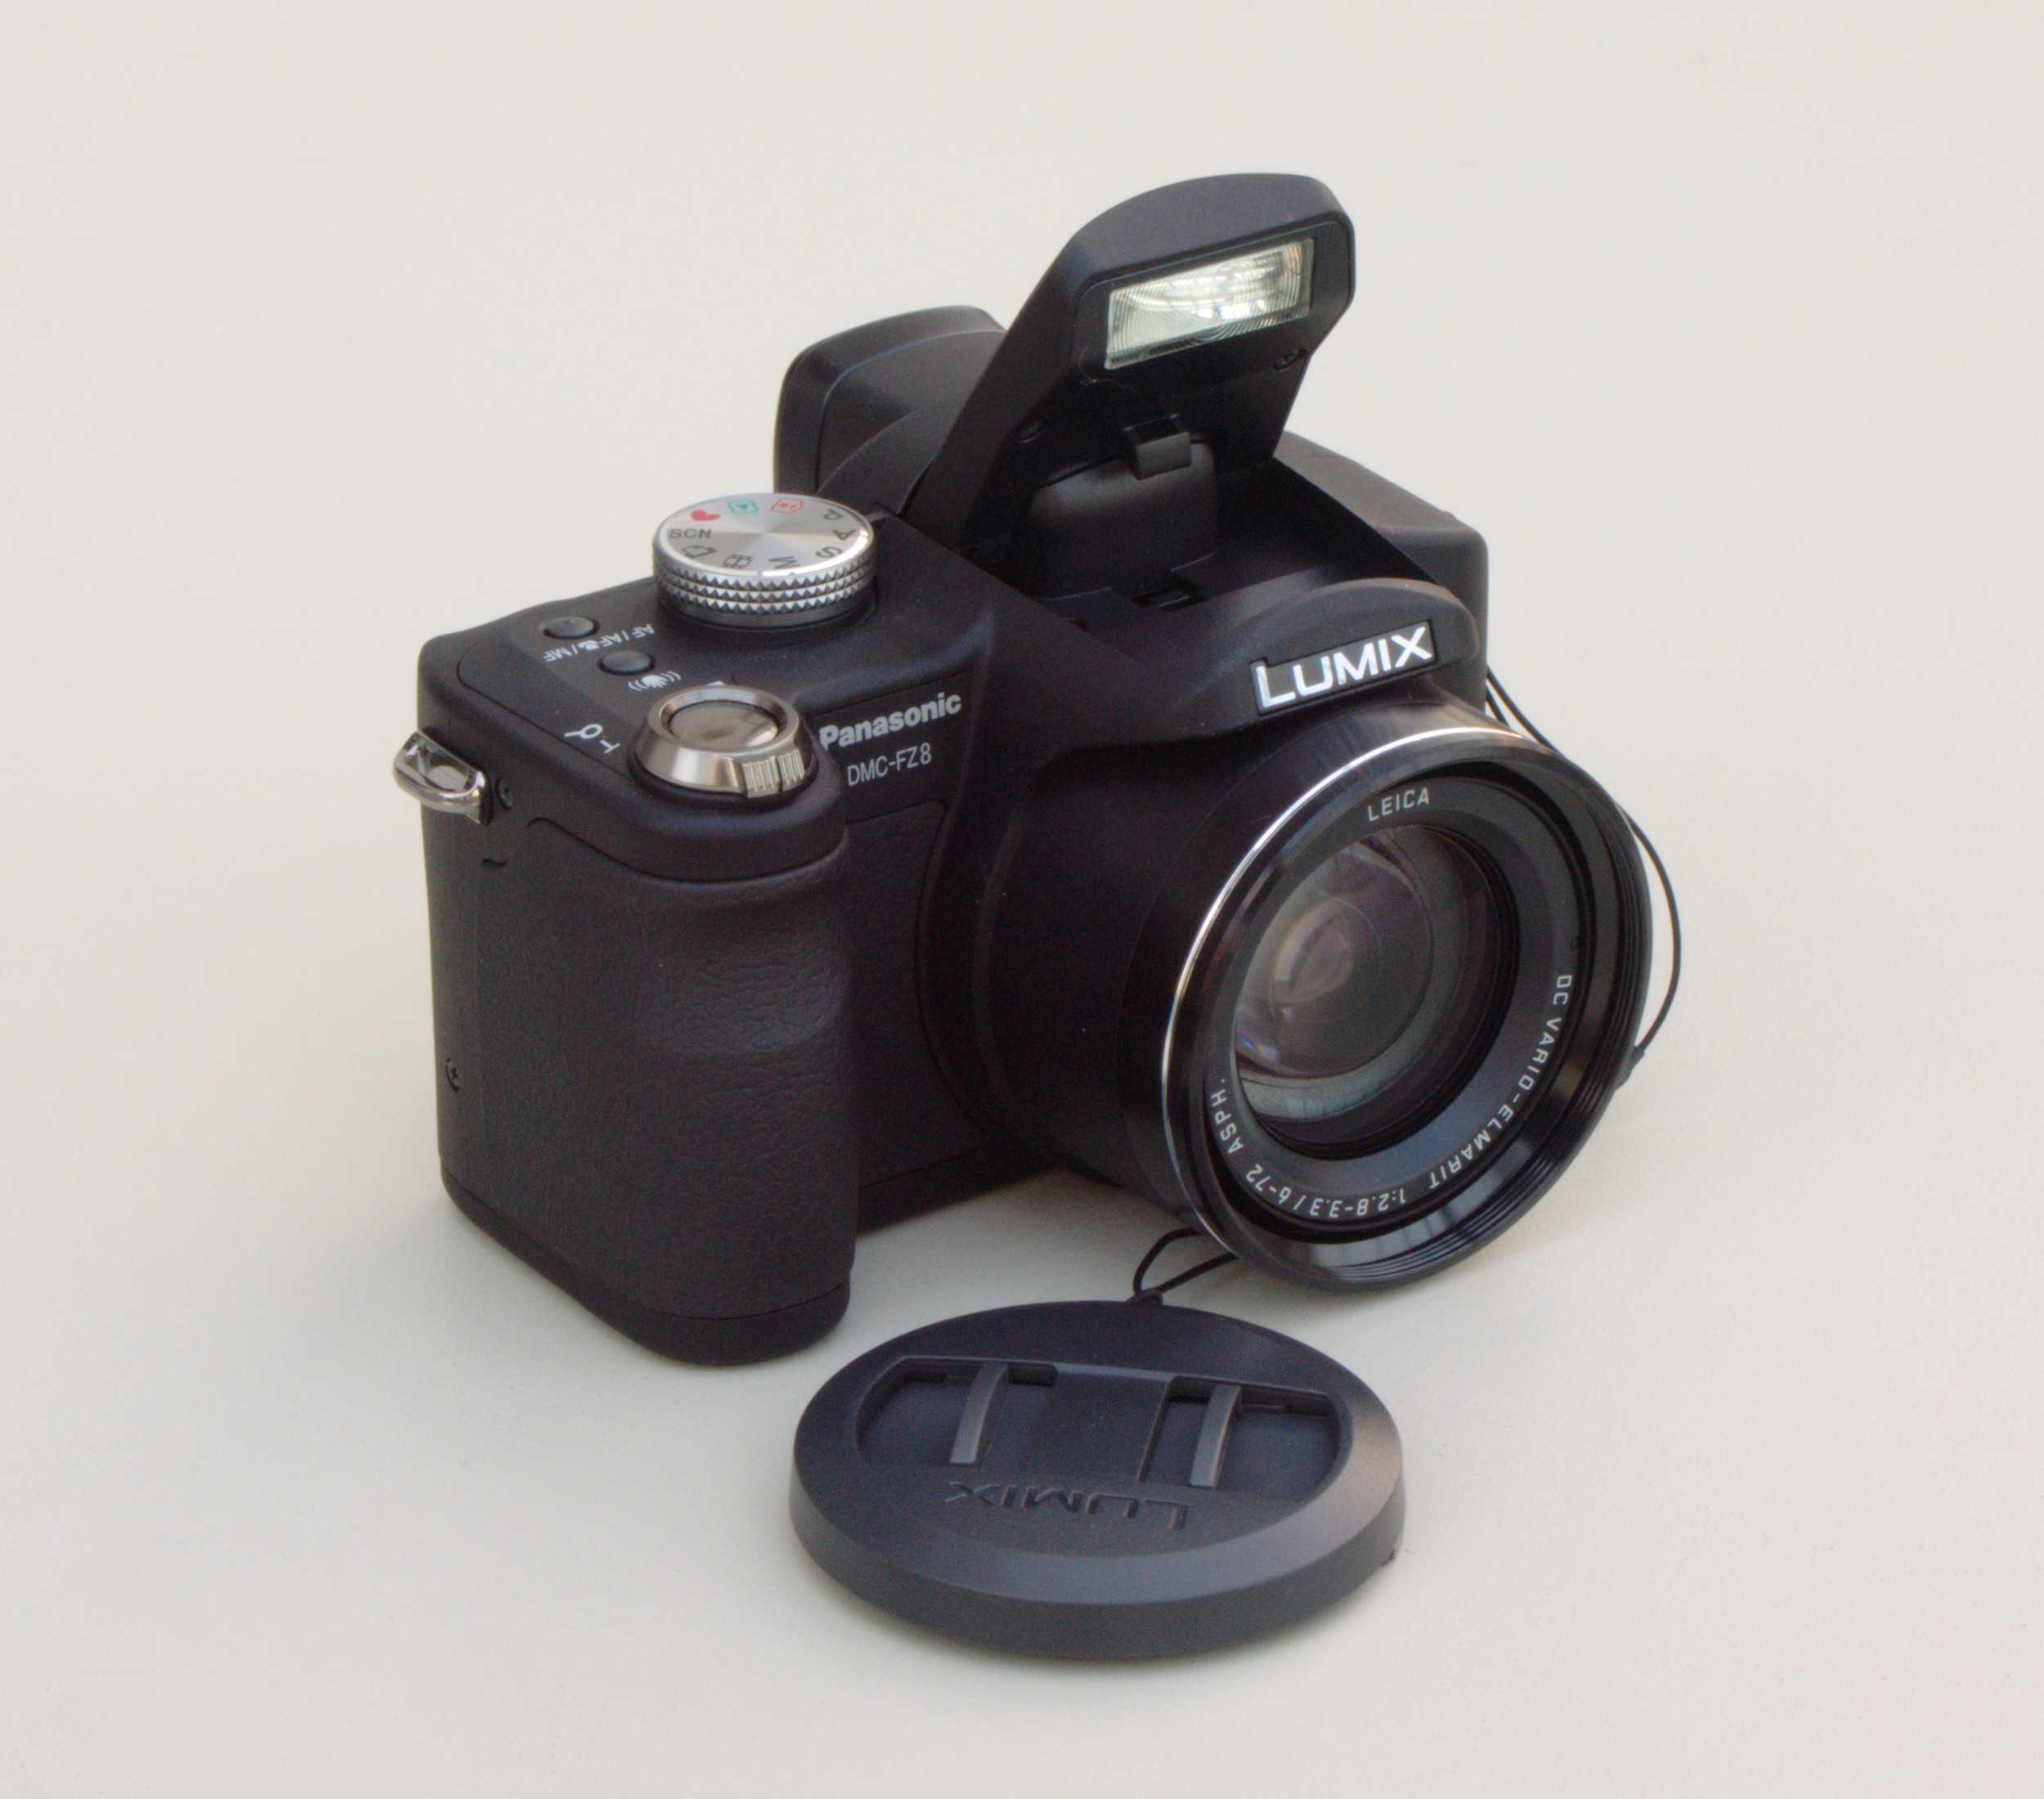 Цифровой фотоаппарат Panasonic Lumix DMC-SZ8 - подробные характеристики обзоры видео фото Цены в интернет-магазинах где можно купить цифровую фотоаппарат Panasonic Lumix DMC-SZ8